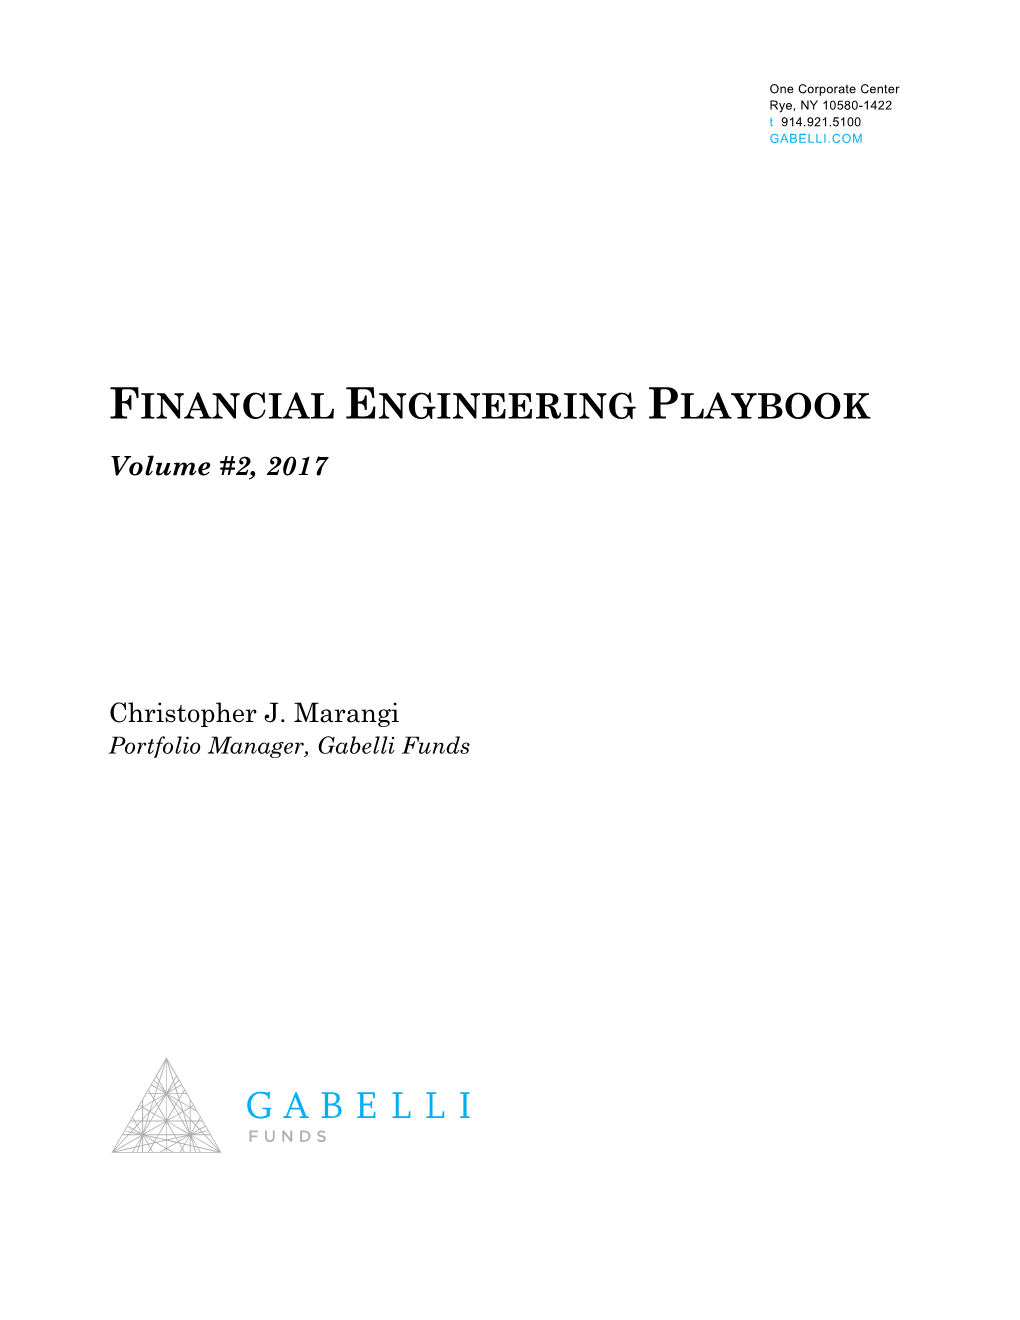 Financial Engineering Playbook